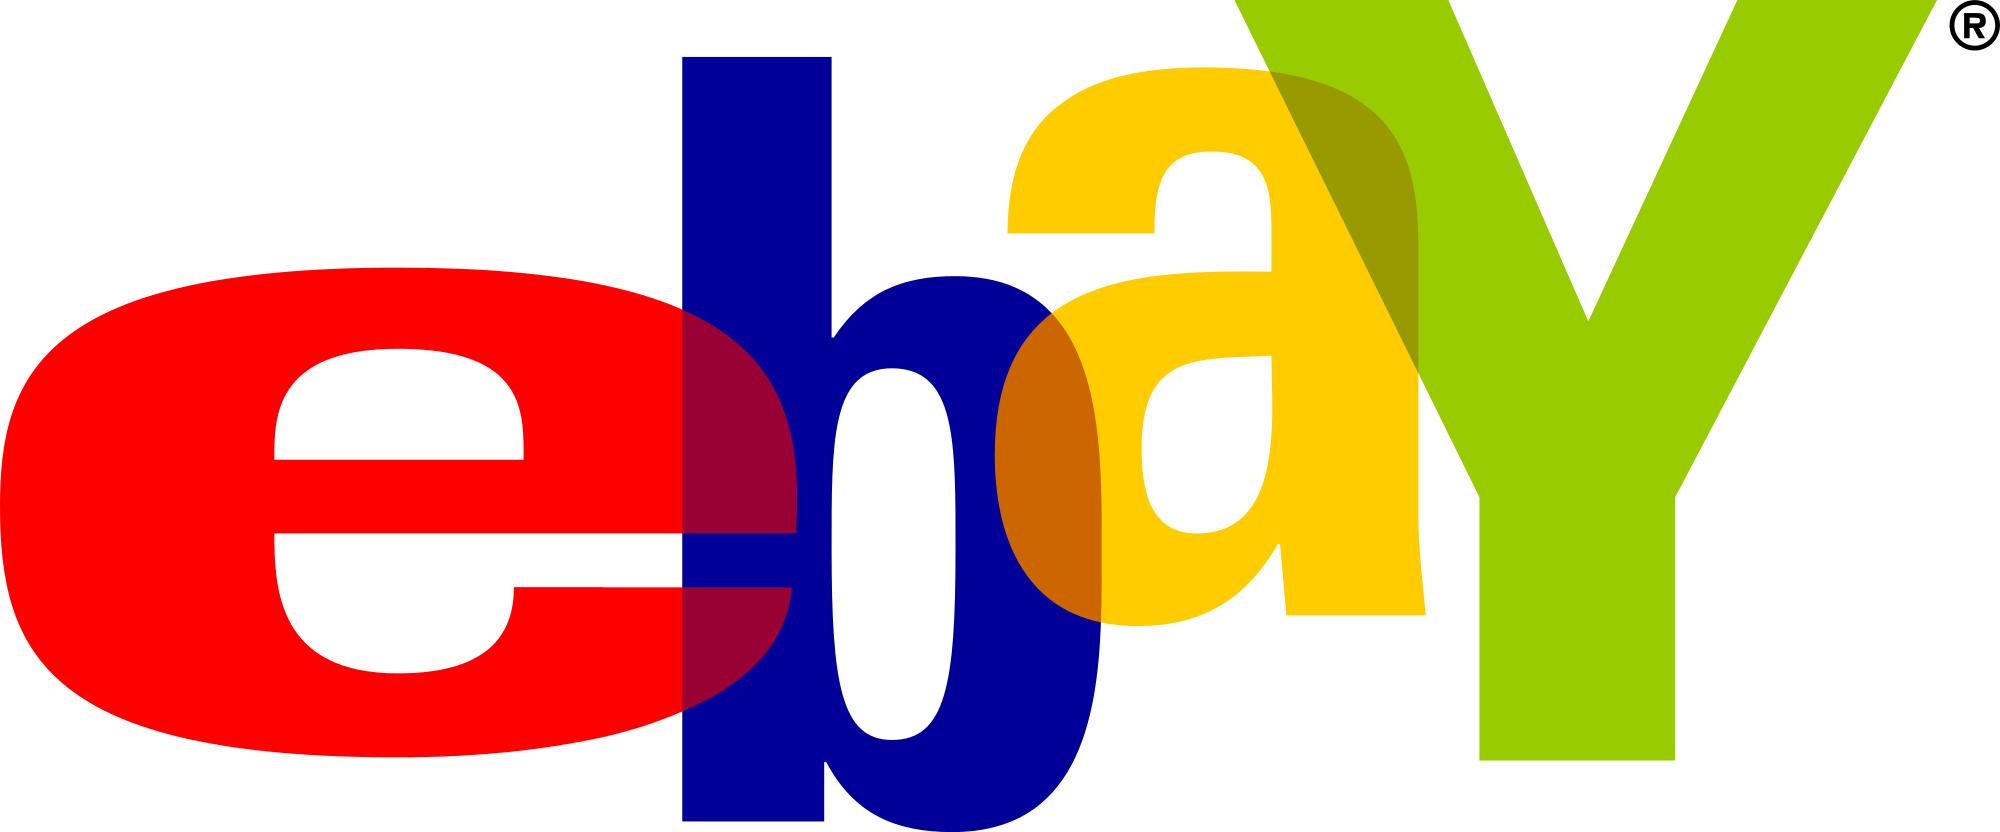 电商平台卖家有福了！eBay年度最大卖家活动回归！eBay Open Online将于8月4日推出！